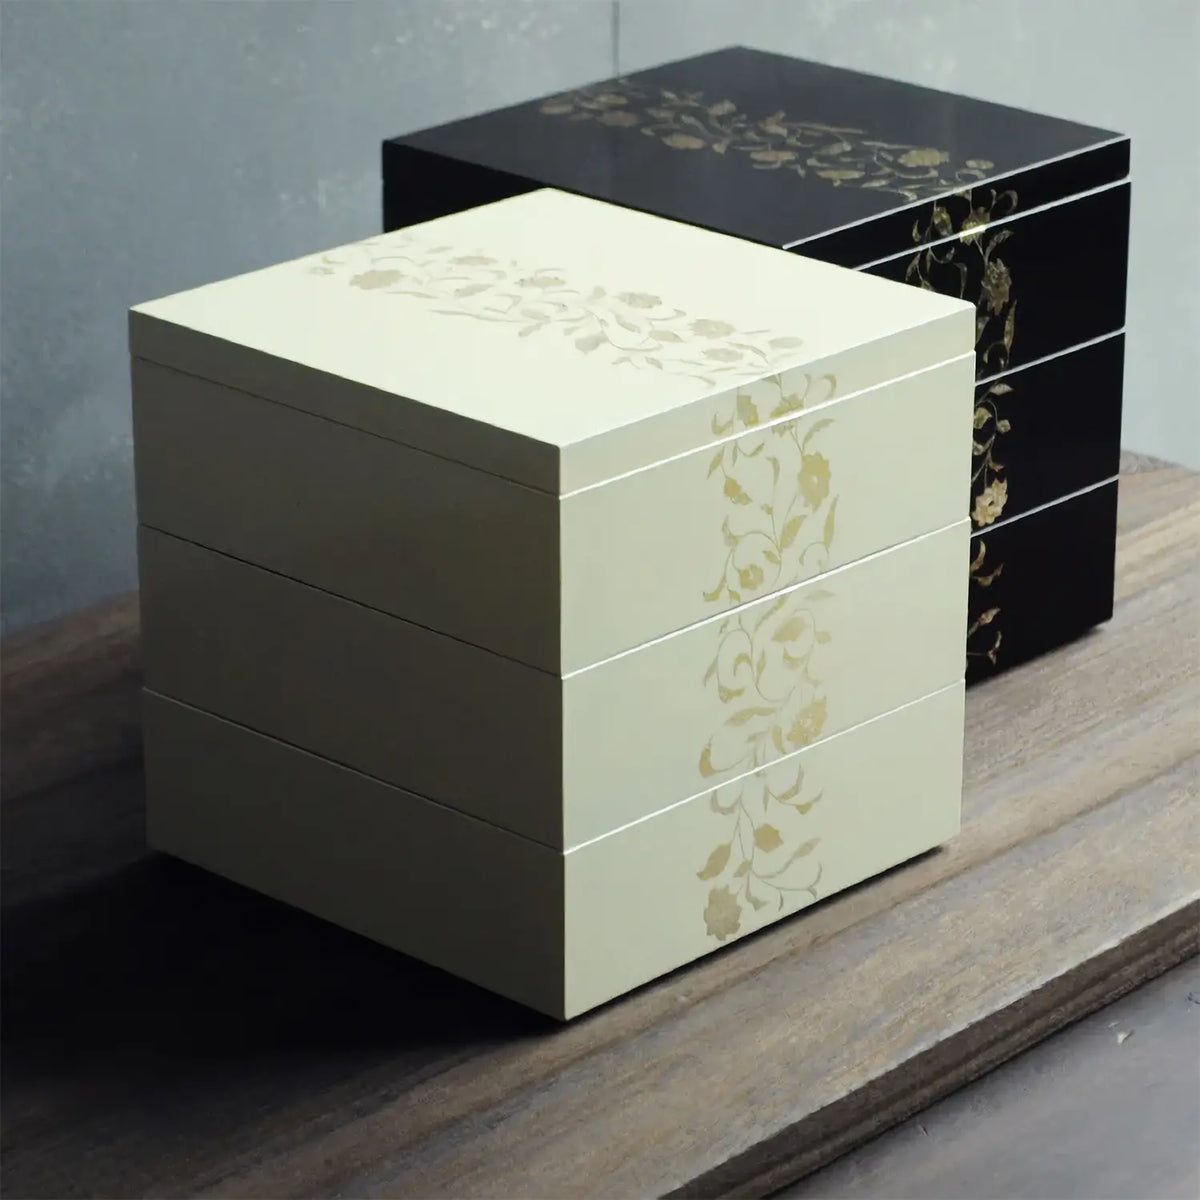 Echizen Shikki Art Deco Synthetic Resin 3-Tier Jubako Box